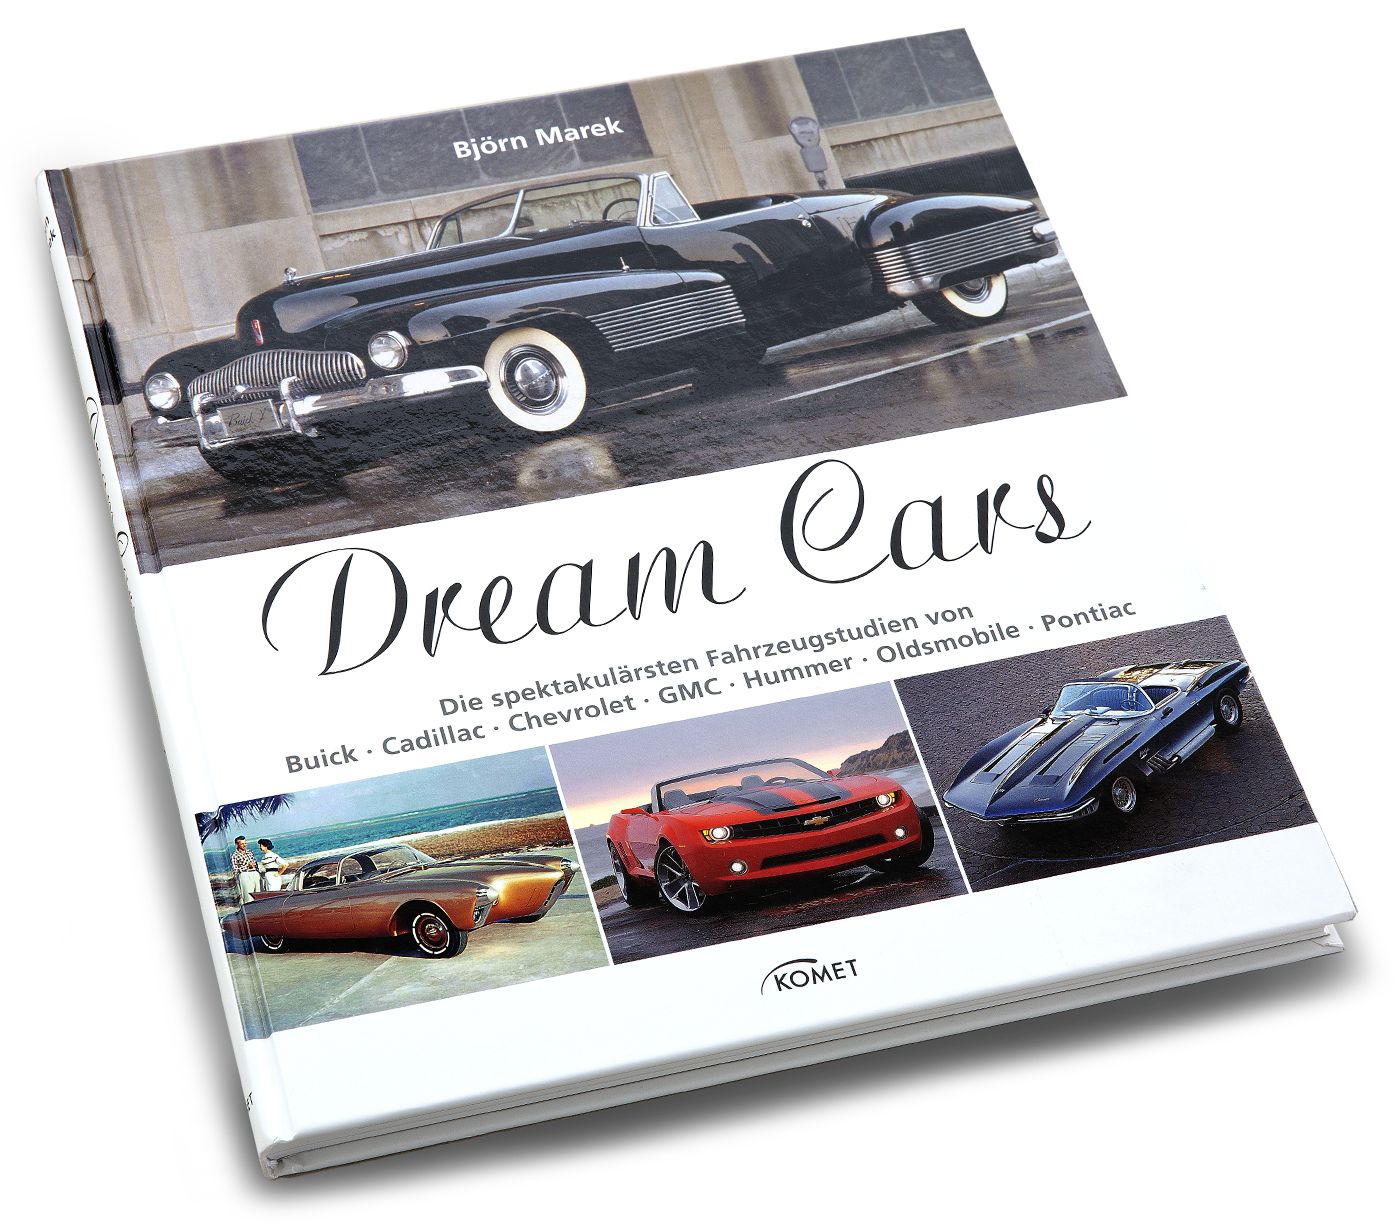 Dream Cars
Dream Cars
Dream Cars